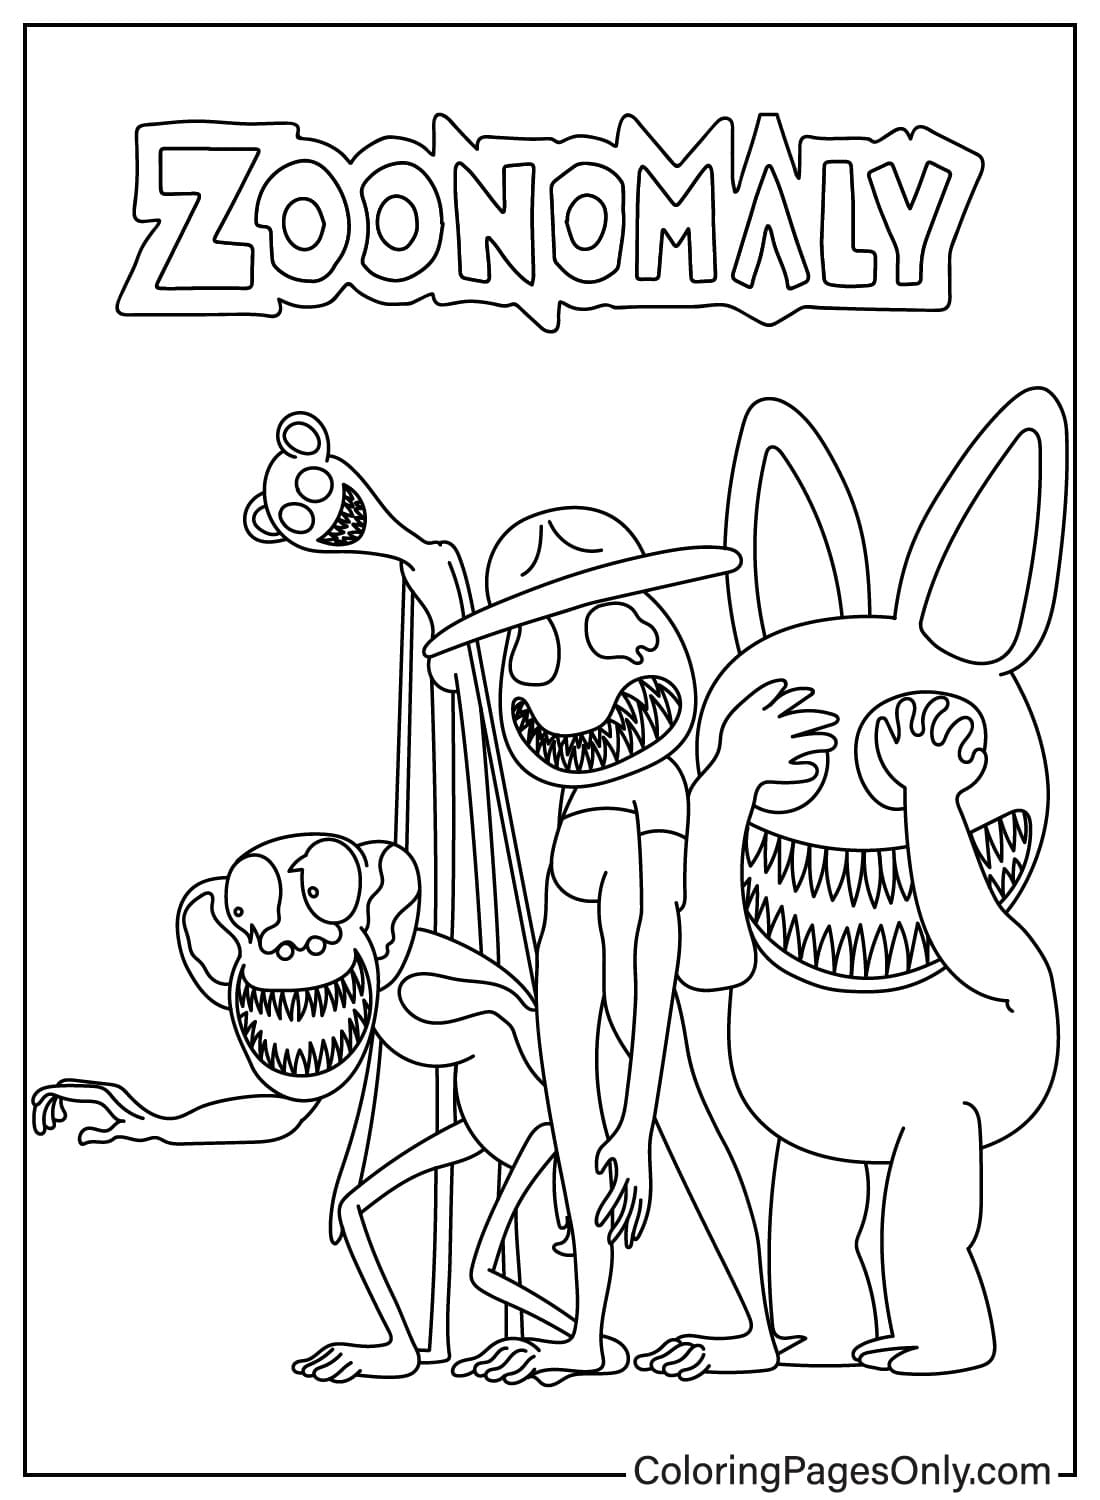 صفحات تلوين الشخصيات من Zoonomaly